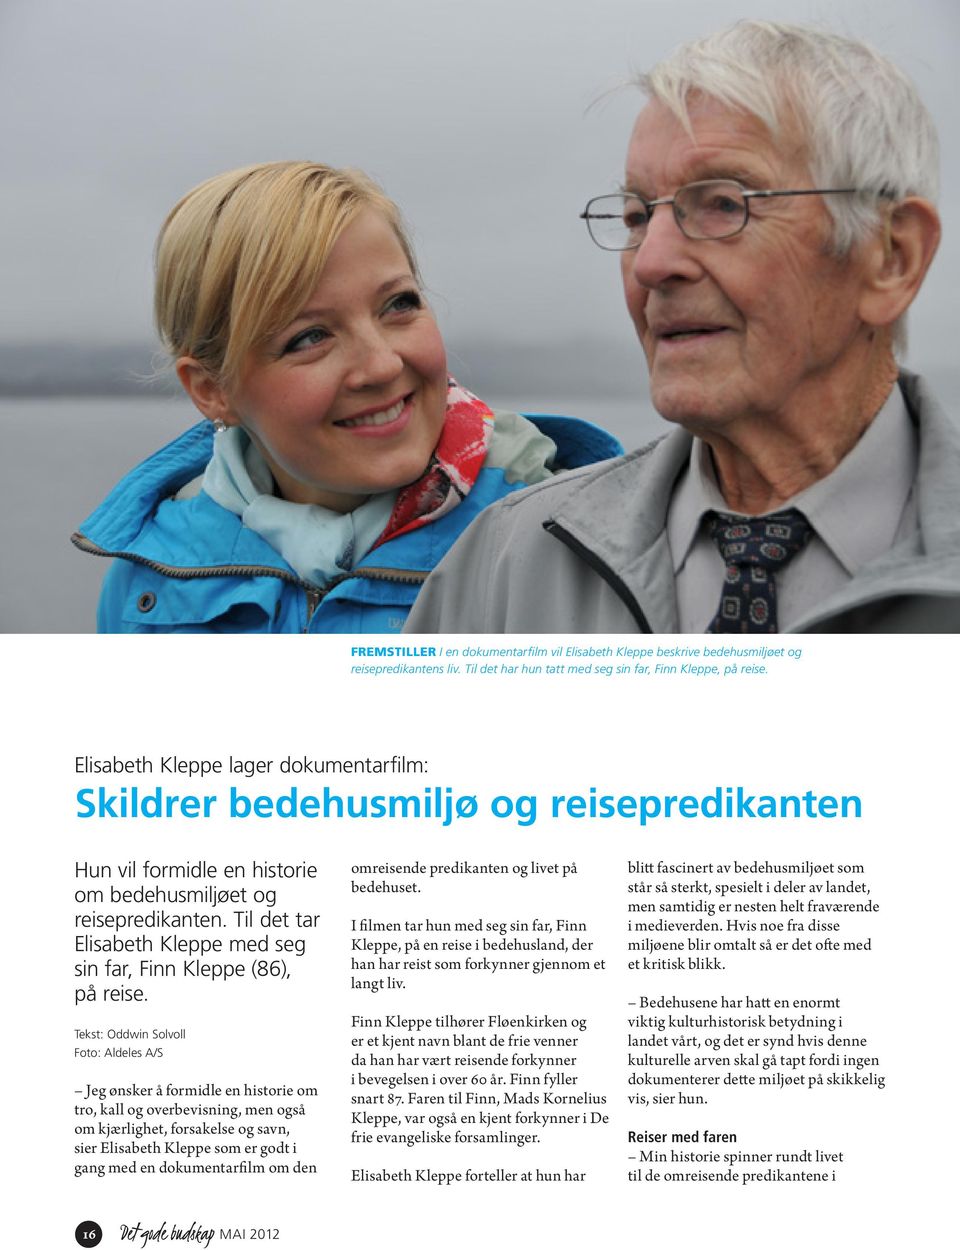 Til det tar Elisabeth Kleppe med seg sin far, Finn Kleppe (86), på reise.